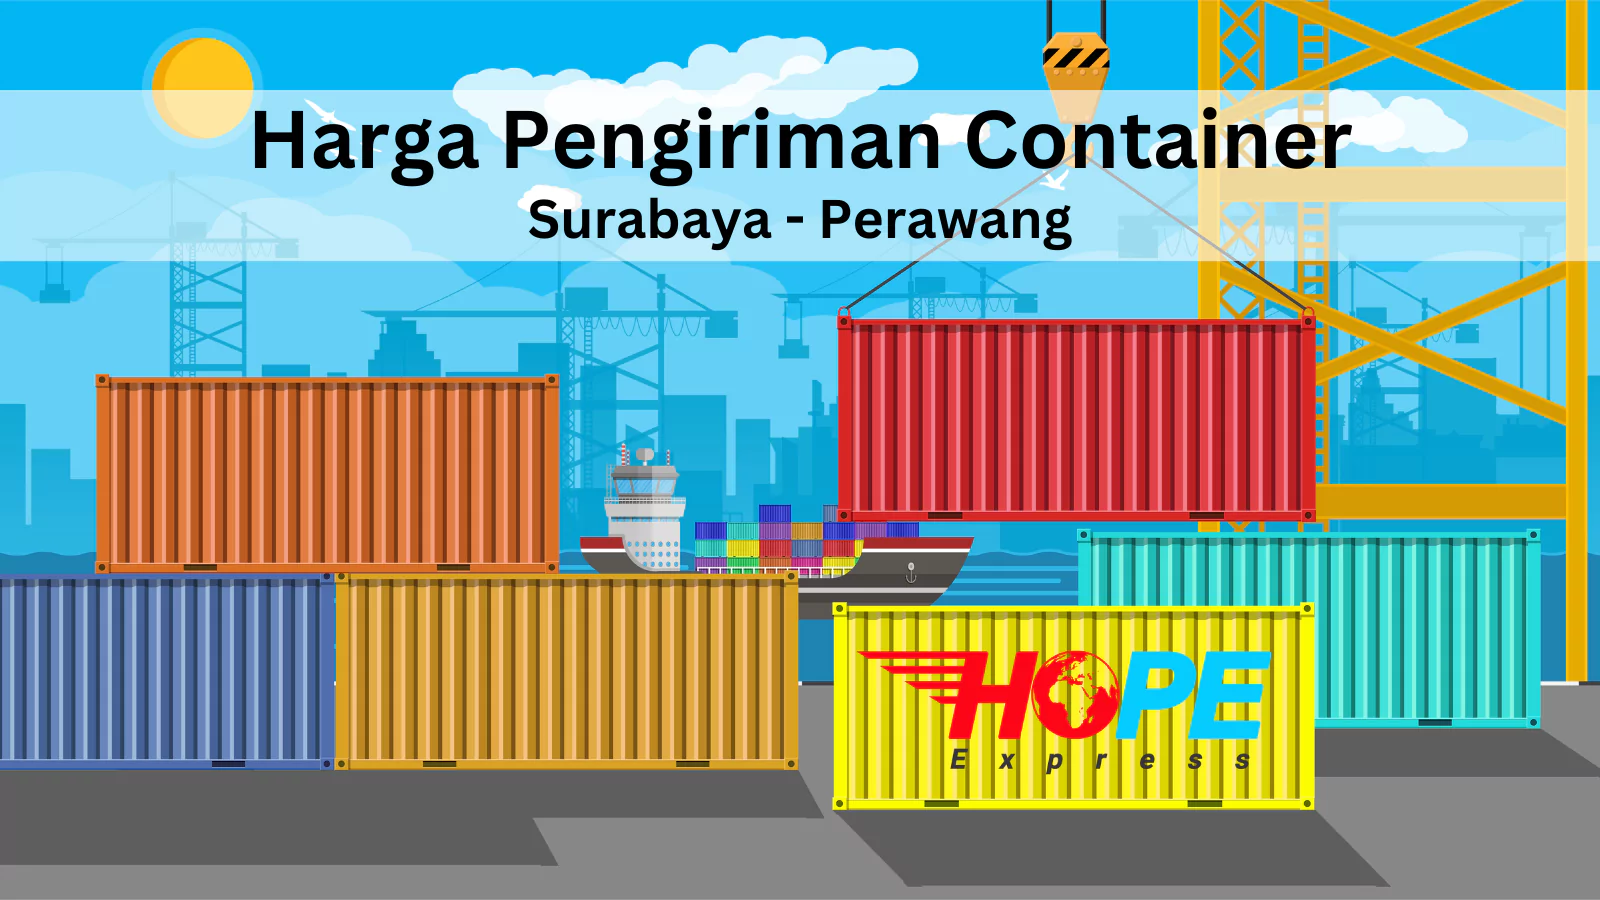 Harga Pengiriman Container Surabaya Perawang